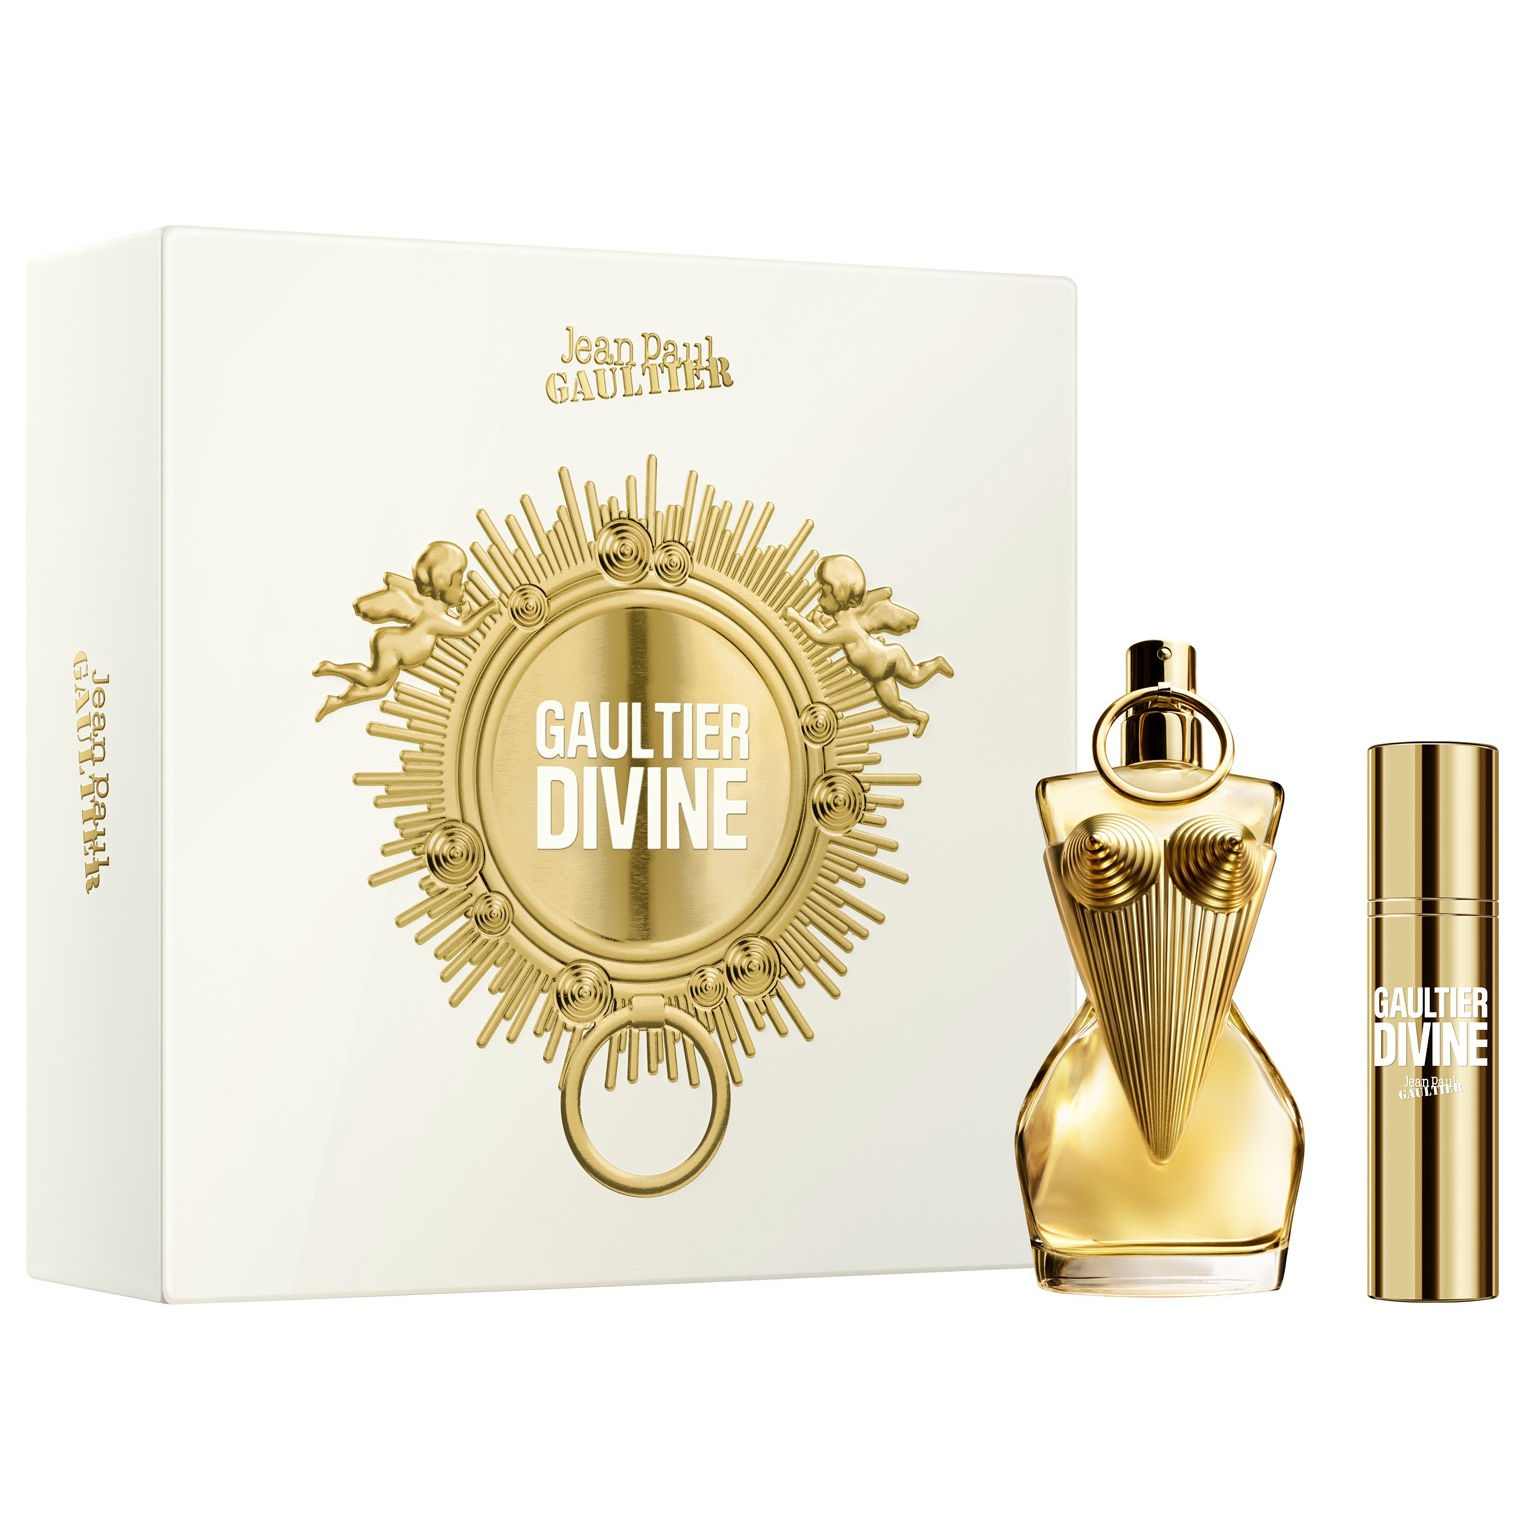 Jean Paul Gaultier Gaultier Divine Gift set 2 st.